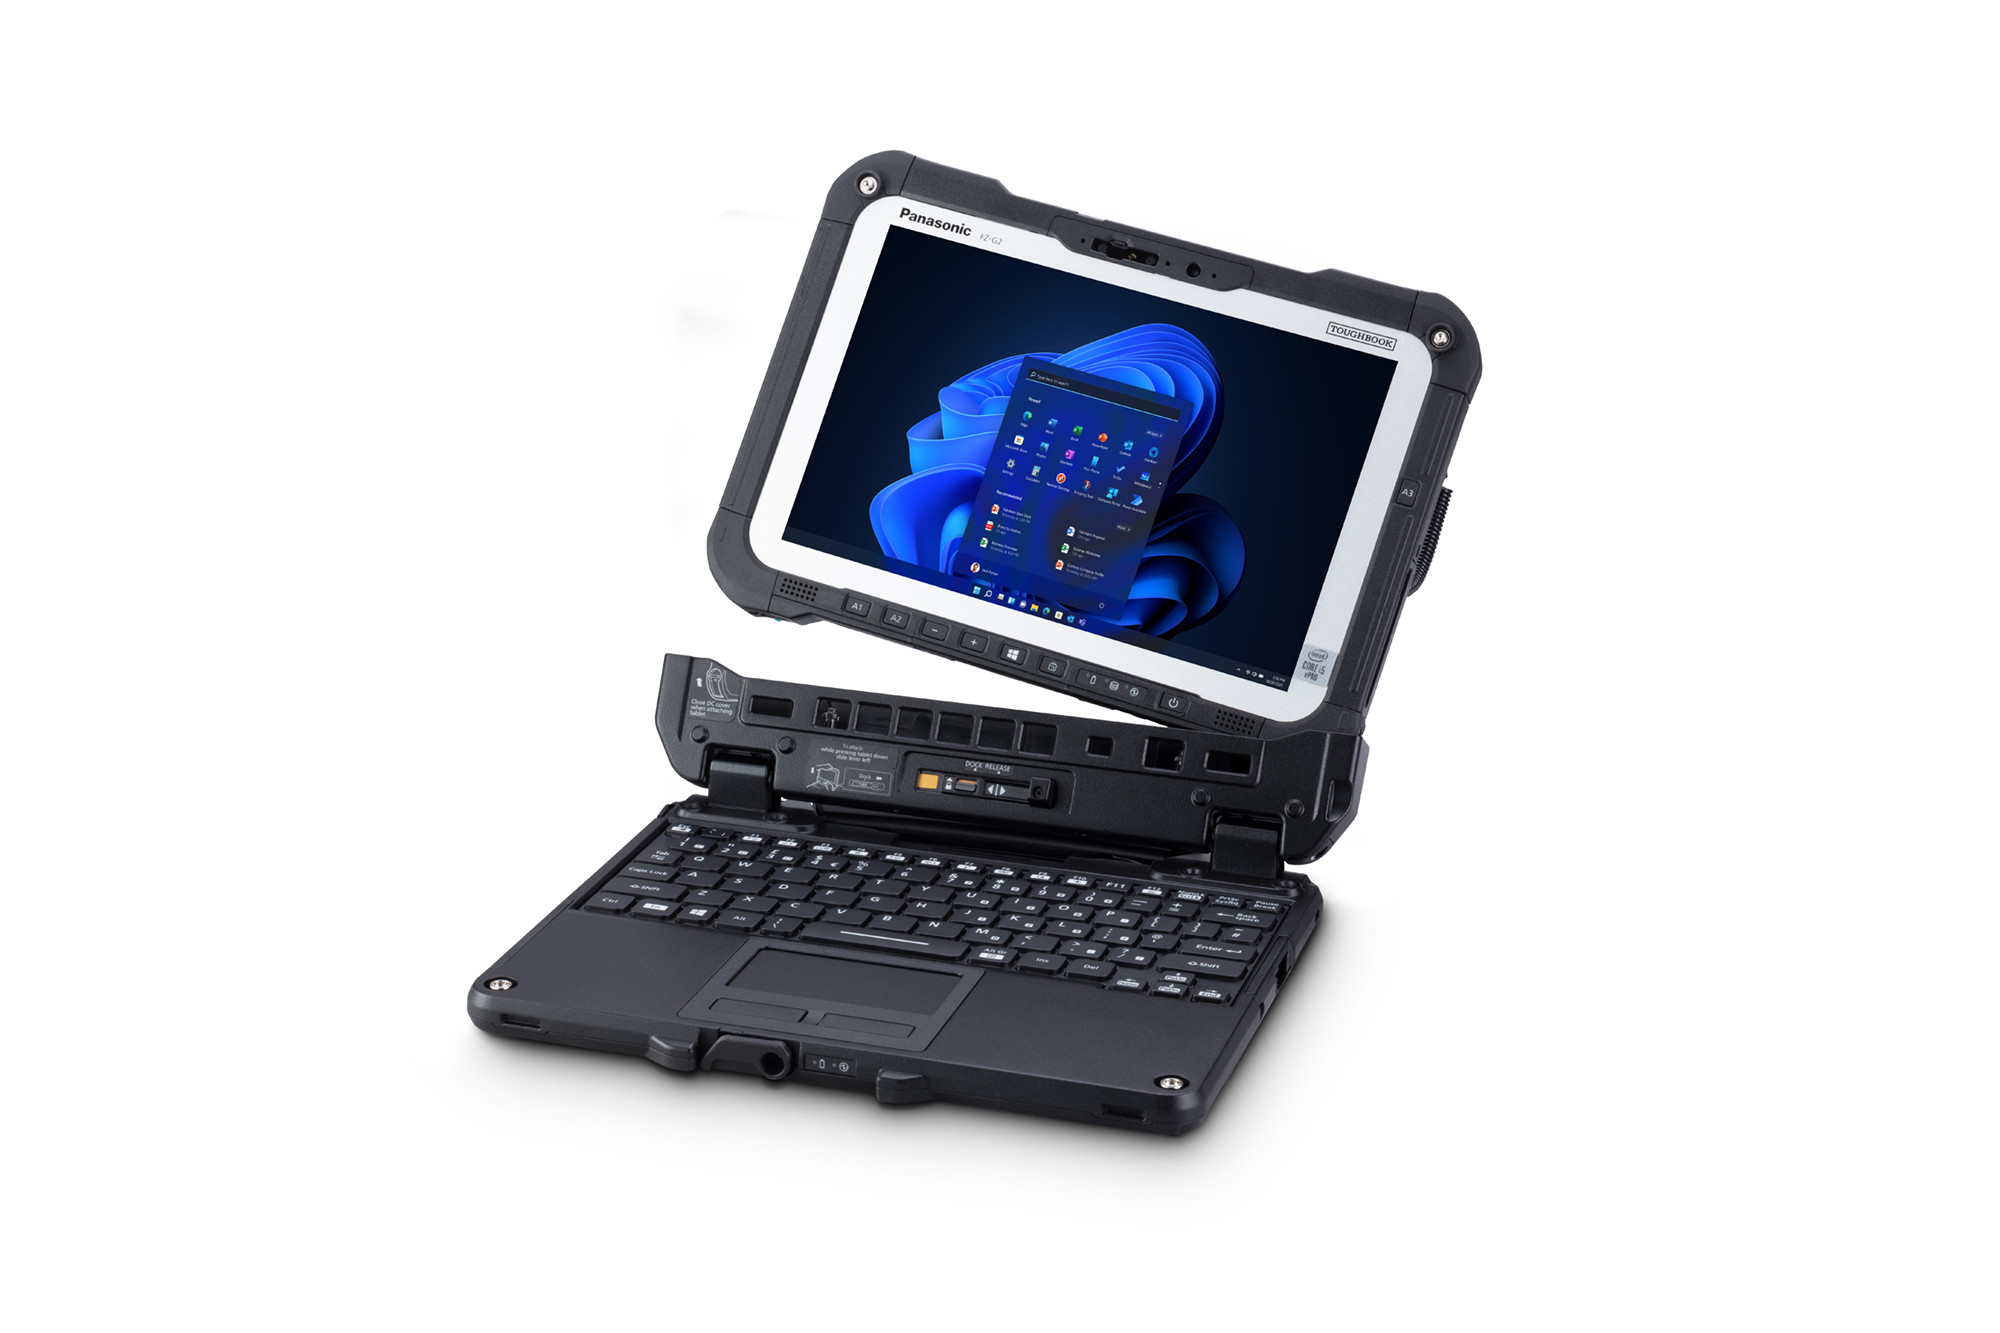 Sonovision - Le Toughpad 4K FZ-Y1 : la première tablette durcie Panasonic  sous Windows 10 Pro